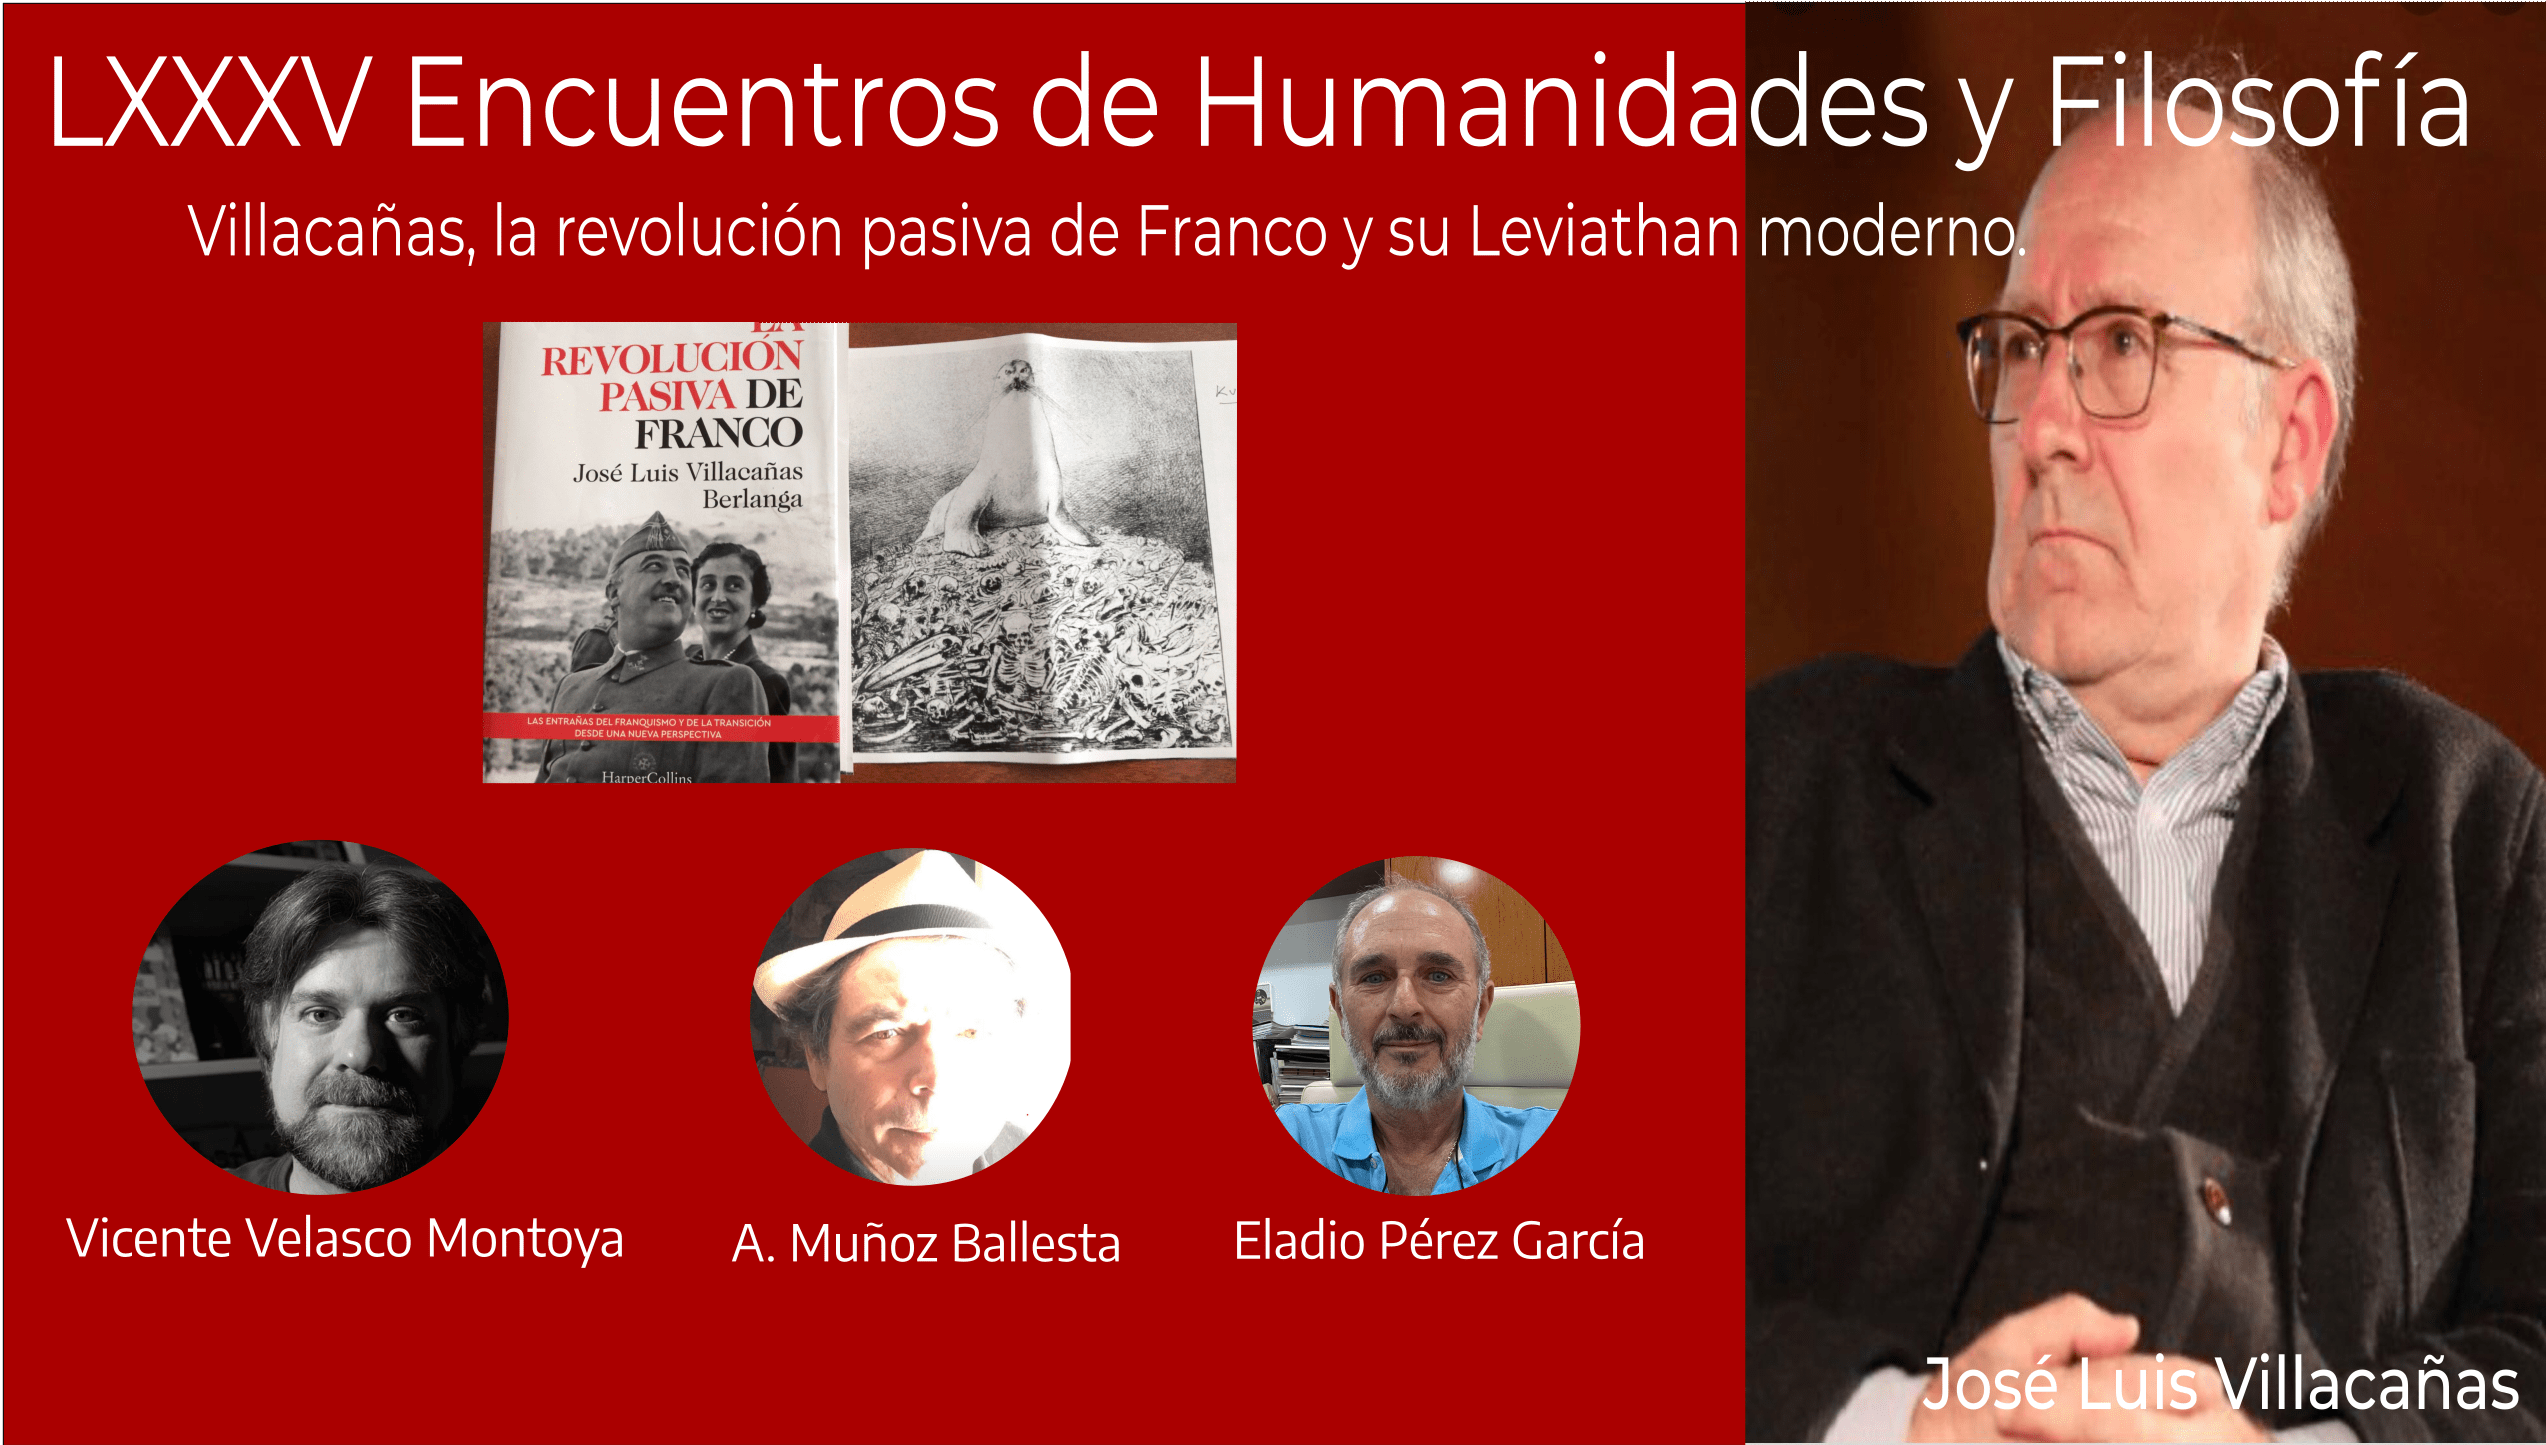  LXXXV Encuentro de Humanidades y Filosofía: Villacañas, la revolución pasiva de Franco y su Leviathan moderno.